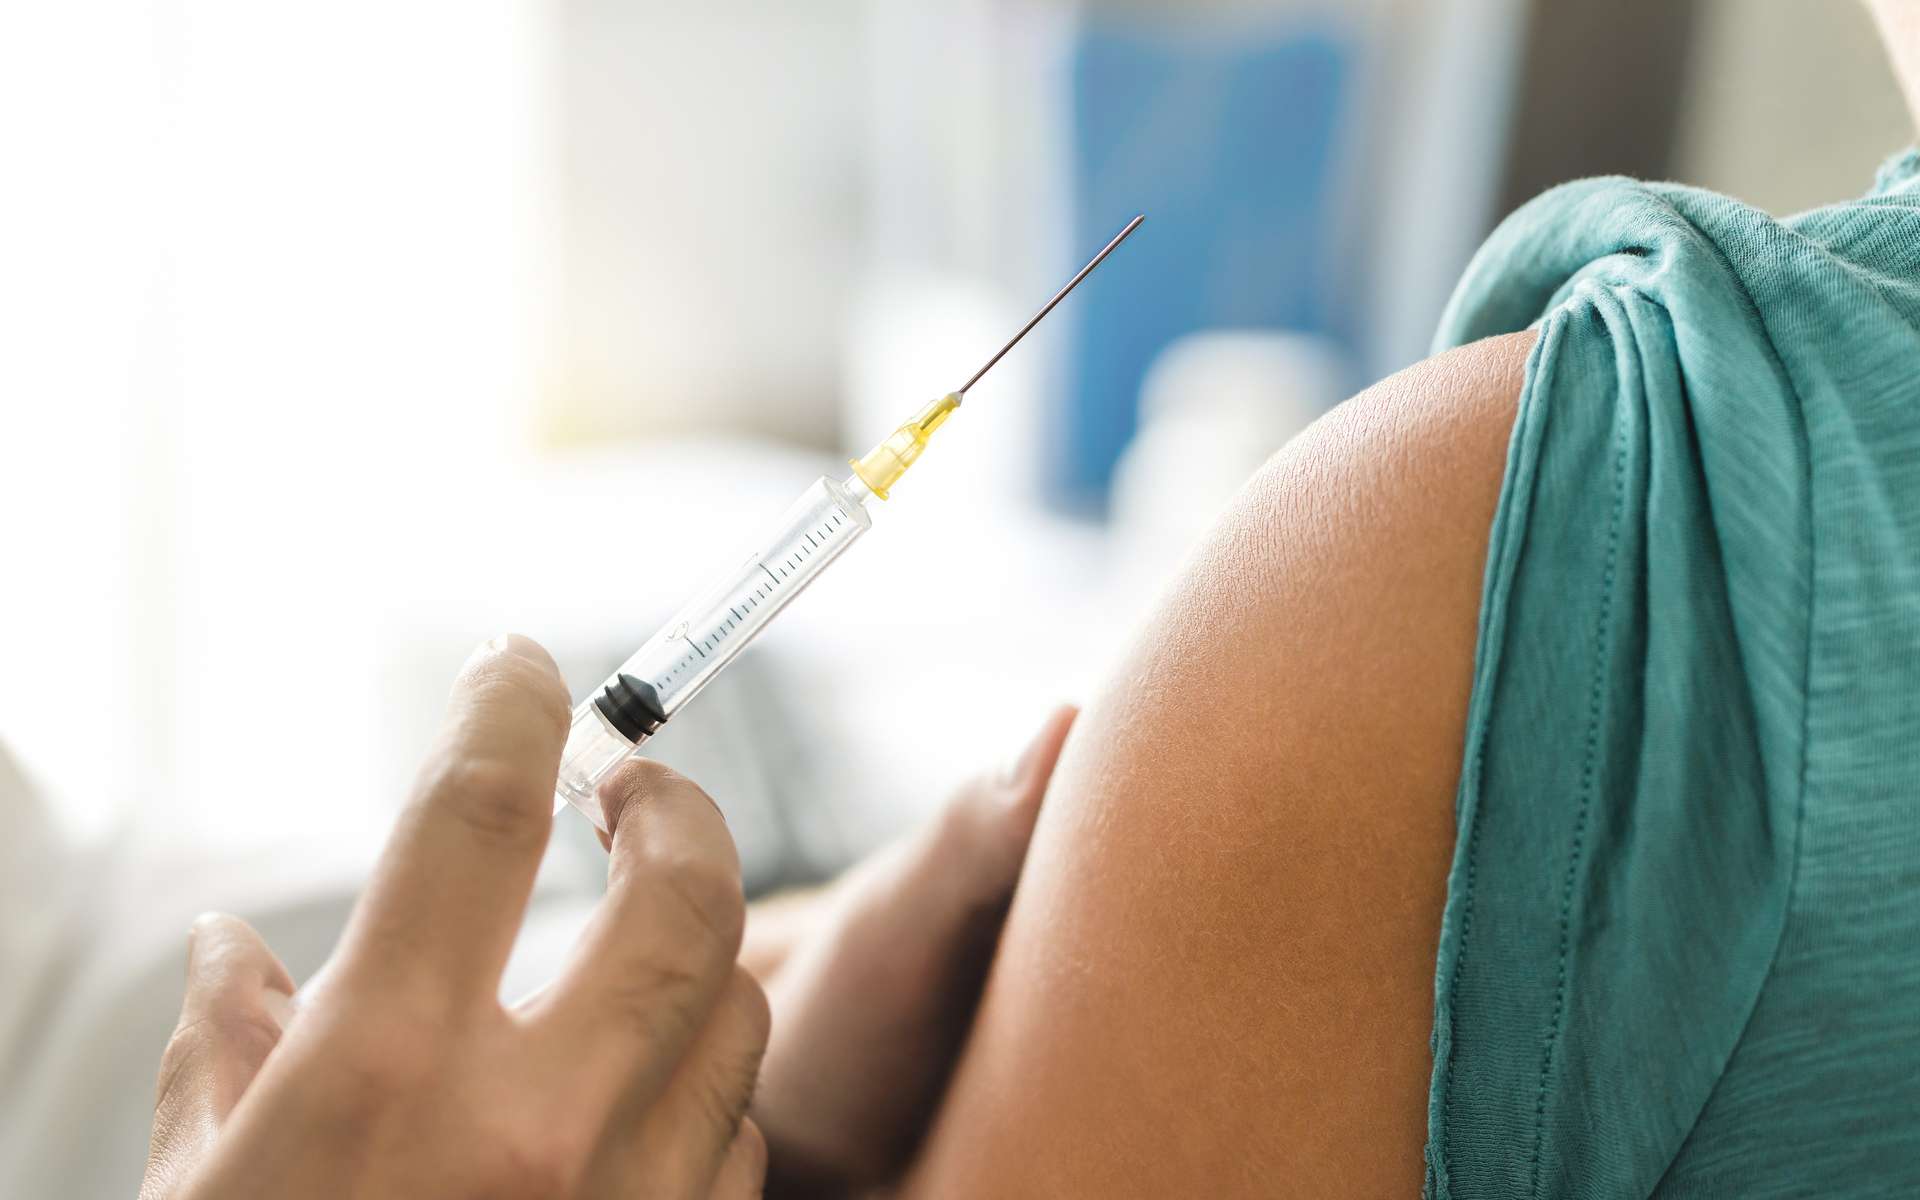 Les adjuvants permettent d'amplifier la réponse immunitaire d'un vaccin. © terovesalainen, Adobe Stock